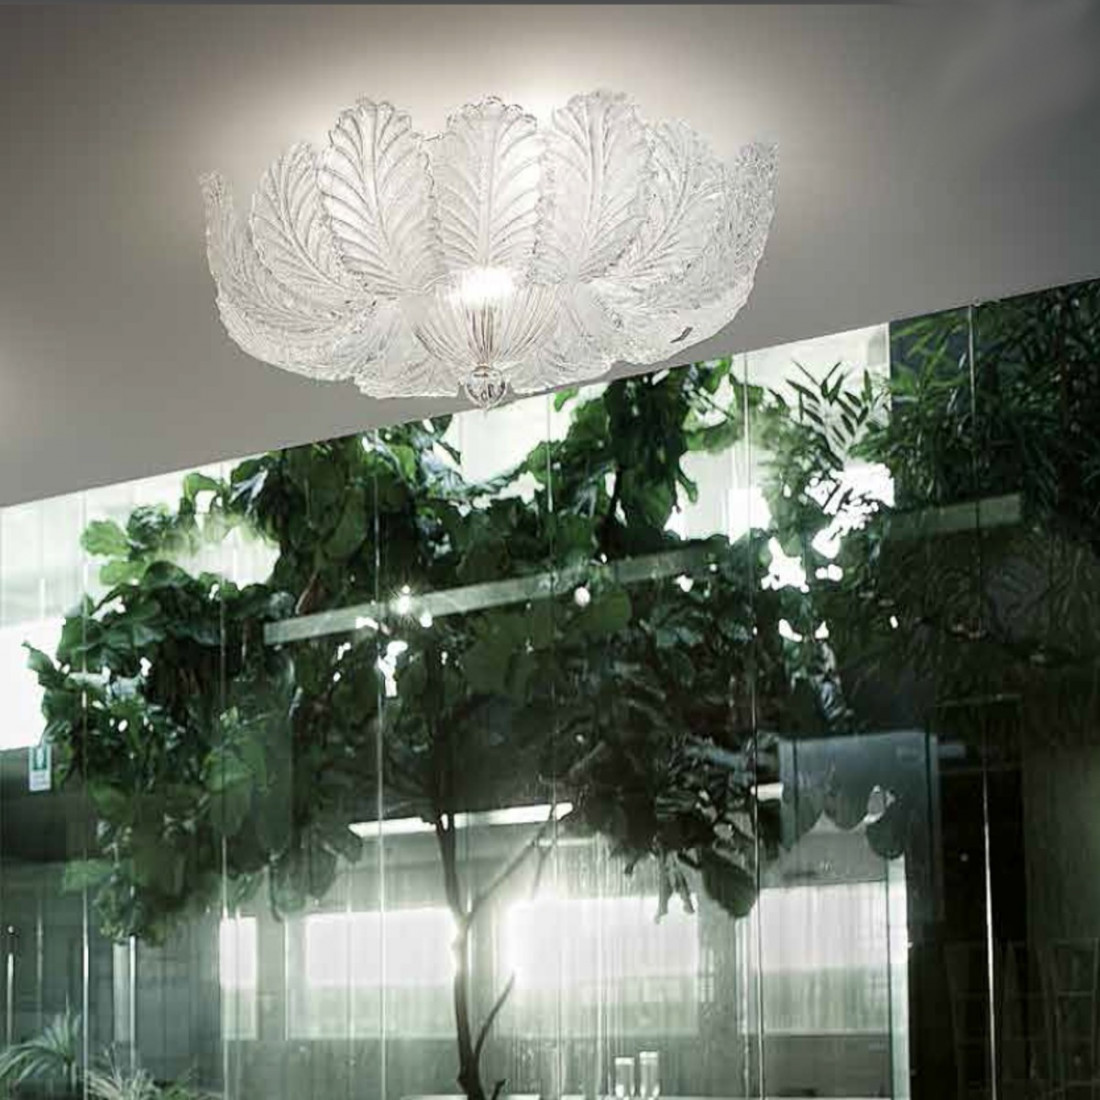 Plafoniera SY-LOREDAN 1400 64 E27 E14 LED vetro graniglia murano veneziano lampada soffitto classica interno